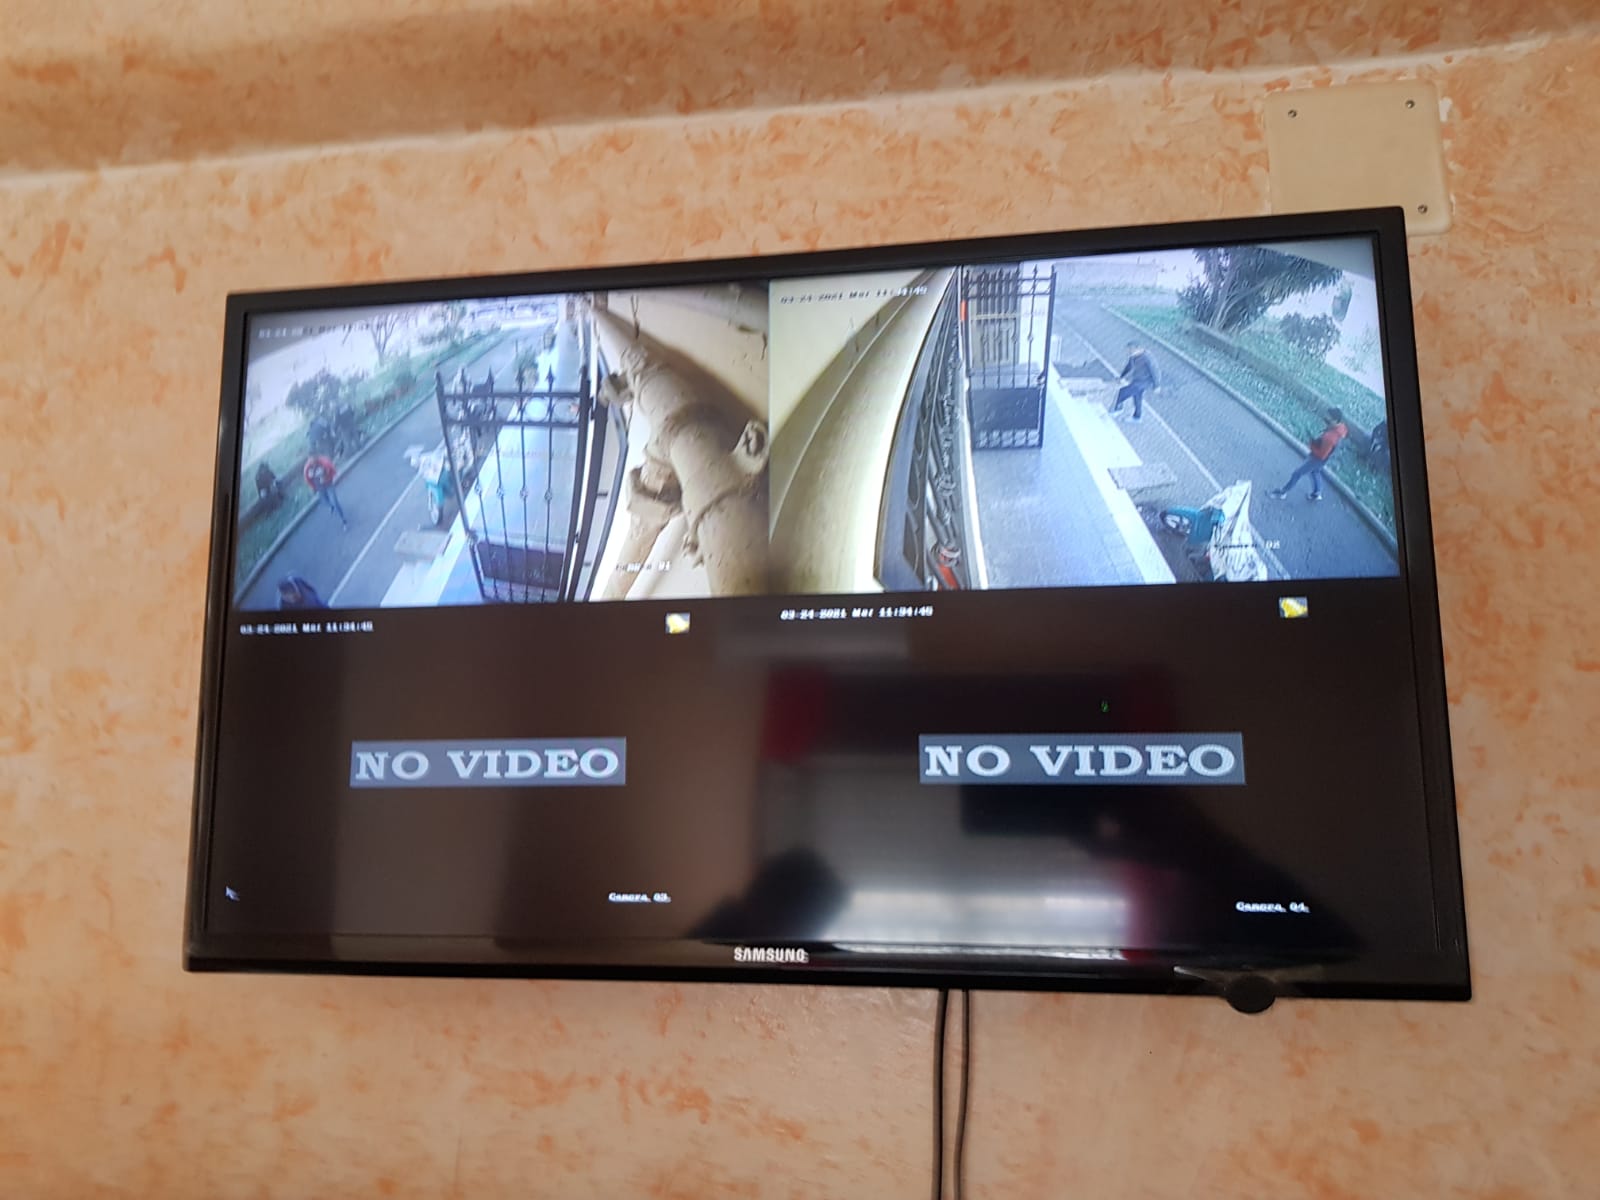 Il sistema di videosroveglianza che aveva Antonio Di Silvio detto Cavallo dentro lasua abitazione al Nicolosi. L'impianot fu sequestrato a marzo 2021 dalla Polizia di Stato